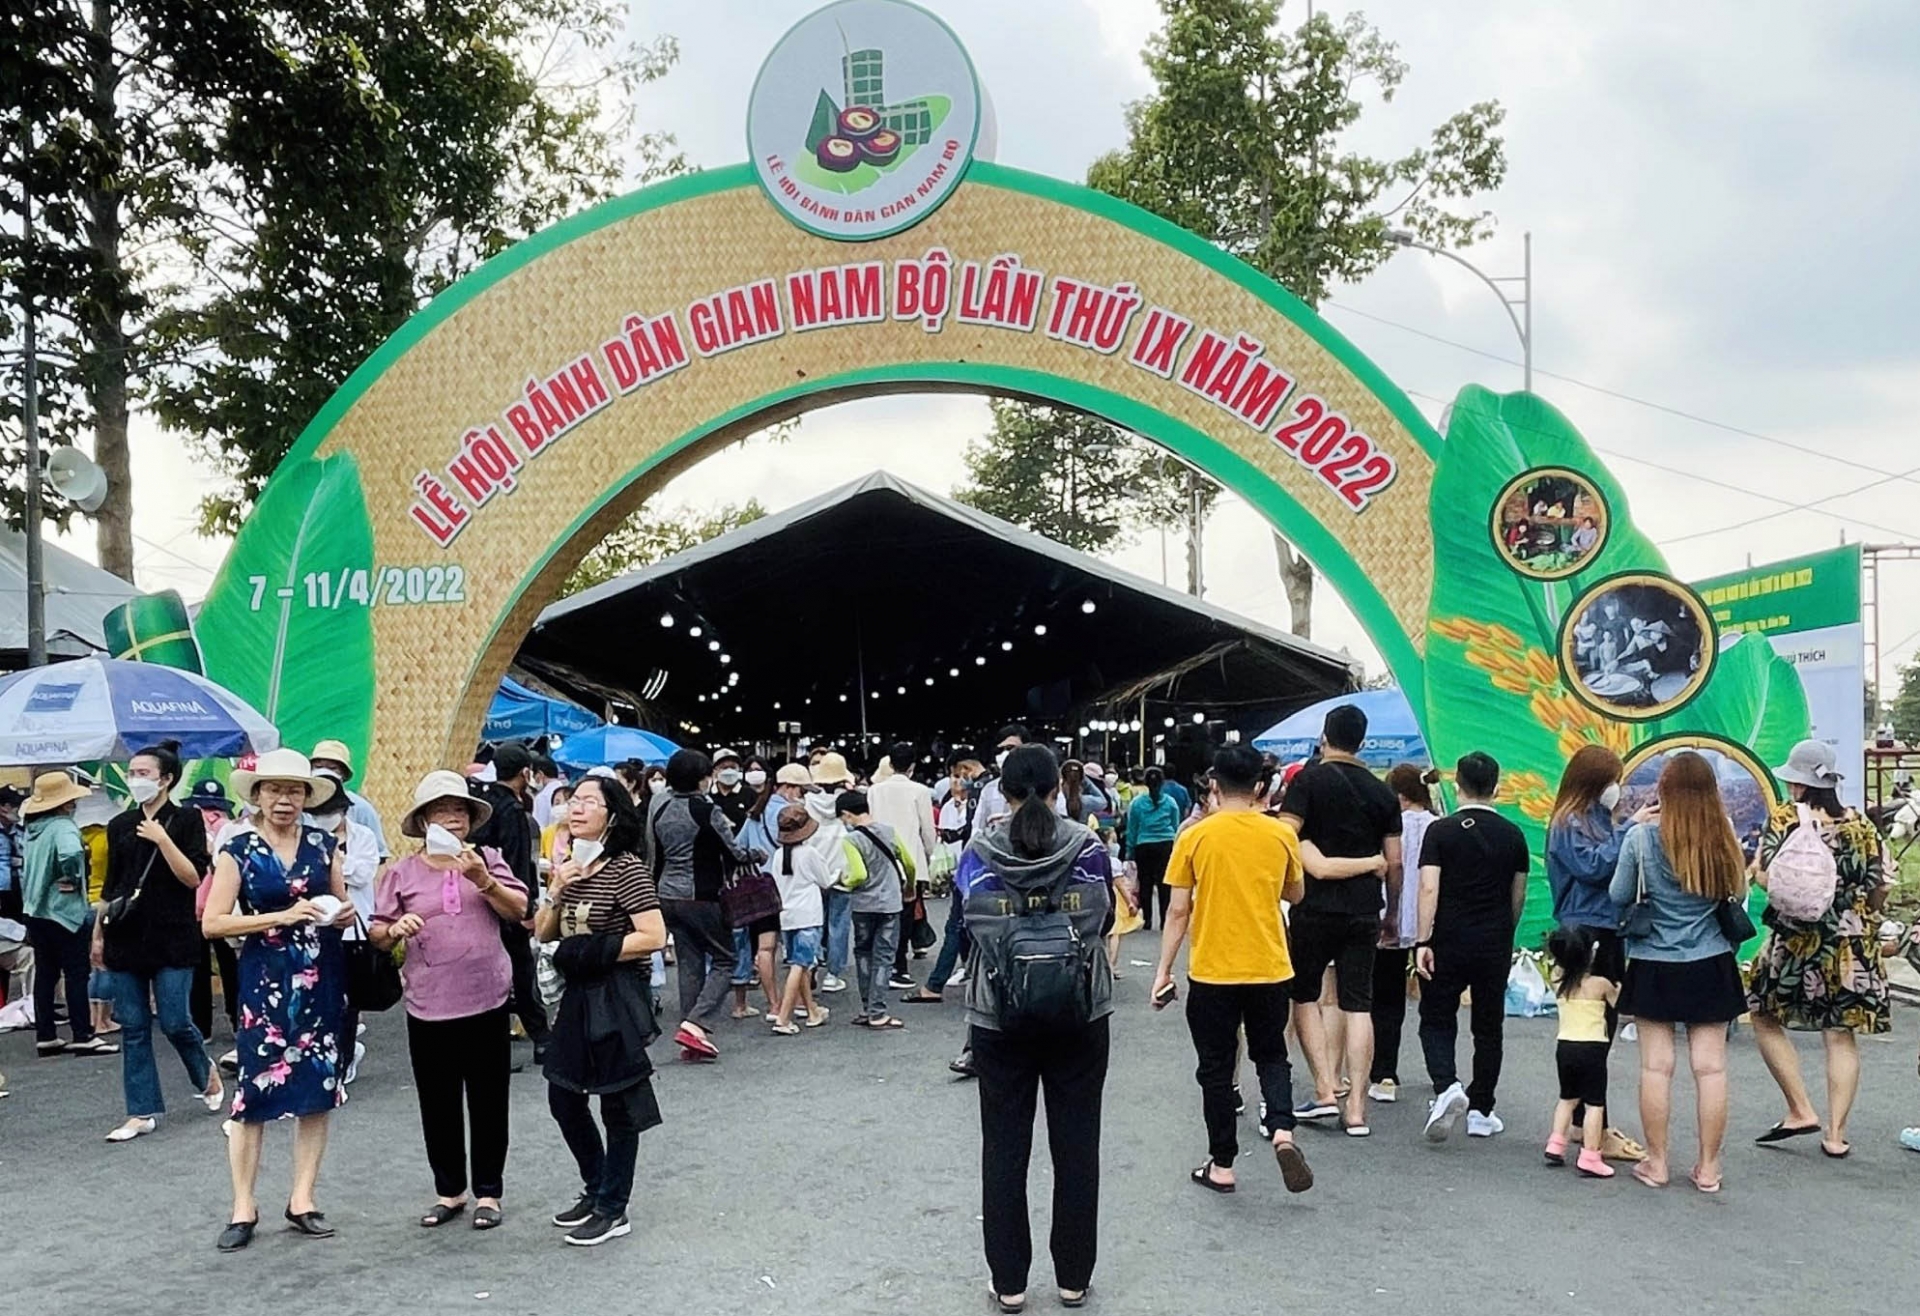 Lễ hội Bánh dân gian Nam bộ lần thứ X năm 2023 diễn ra vào dịp giỗ tổ Hùng Vương